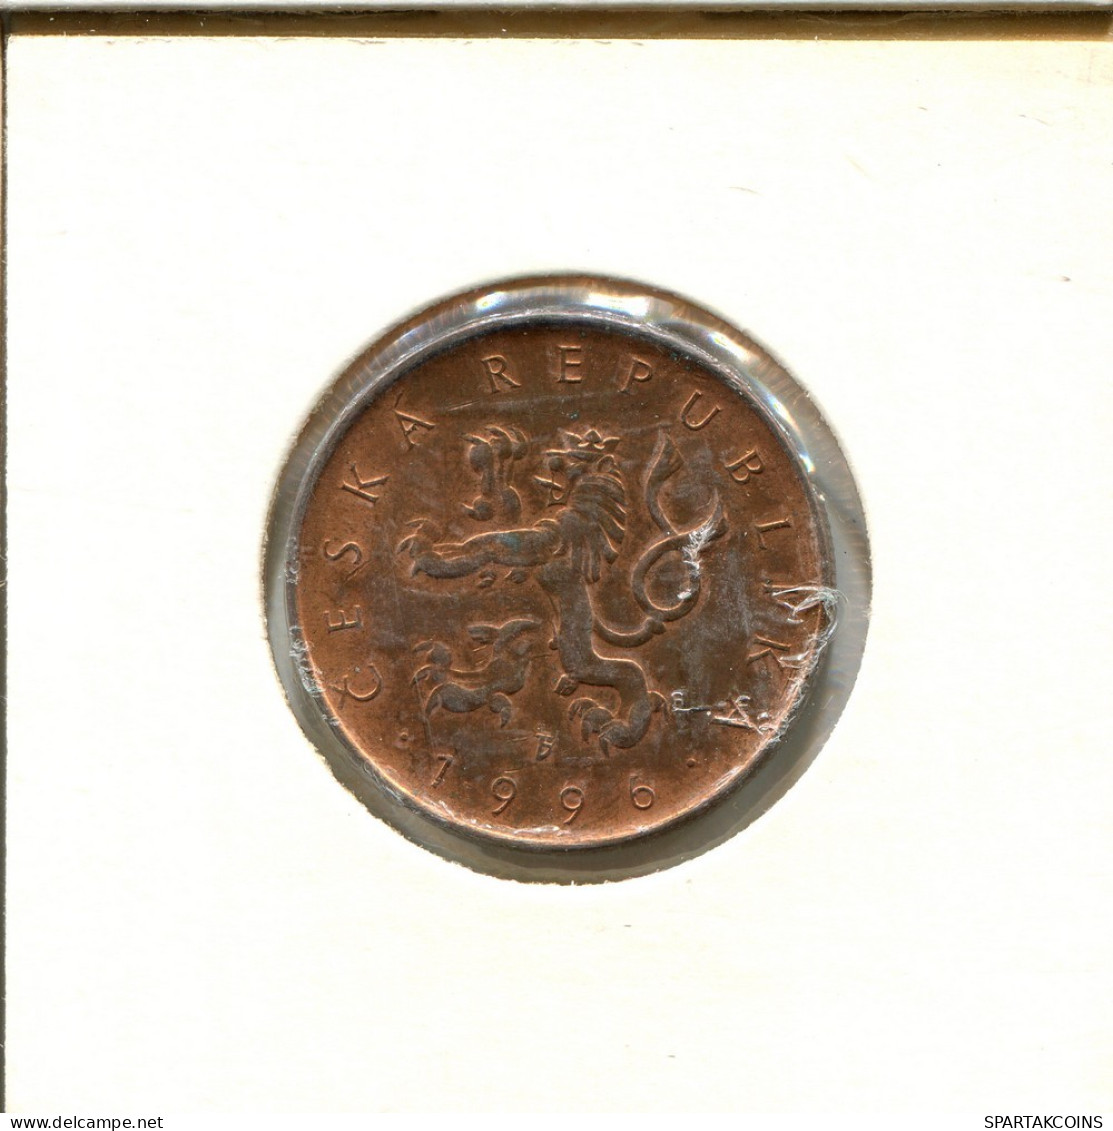 10 KORUN 1996 CZECH REPUBLIC Coin #AS929.U.A - Tchéquie